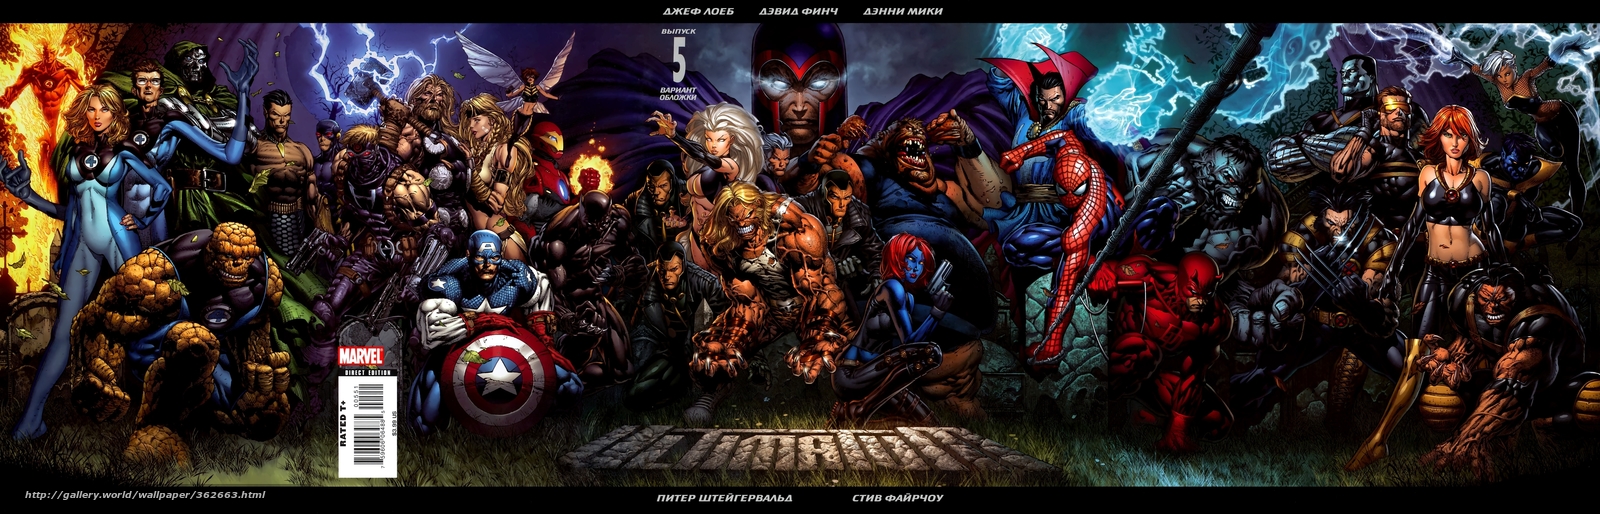 Download Wallpaper Captain America, Spiderman, Fantastic - Marvel Comics Solicitations September 2019 - HD Wallpaper 